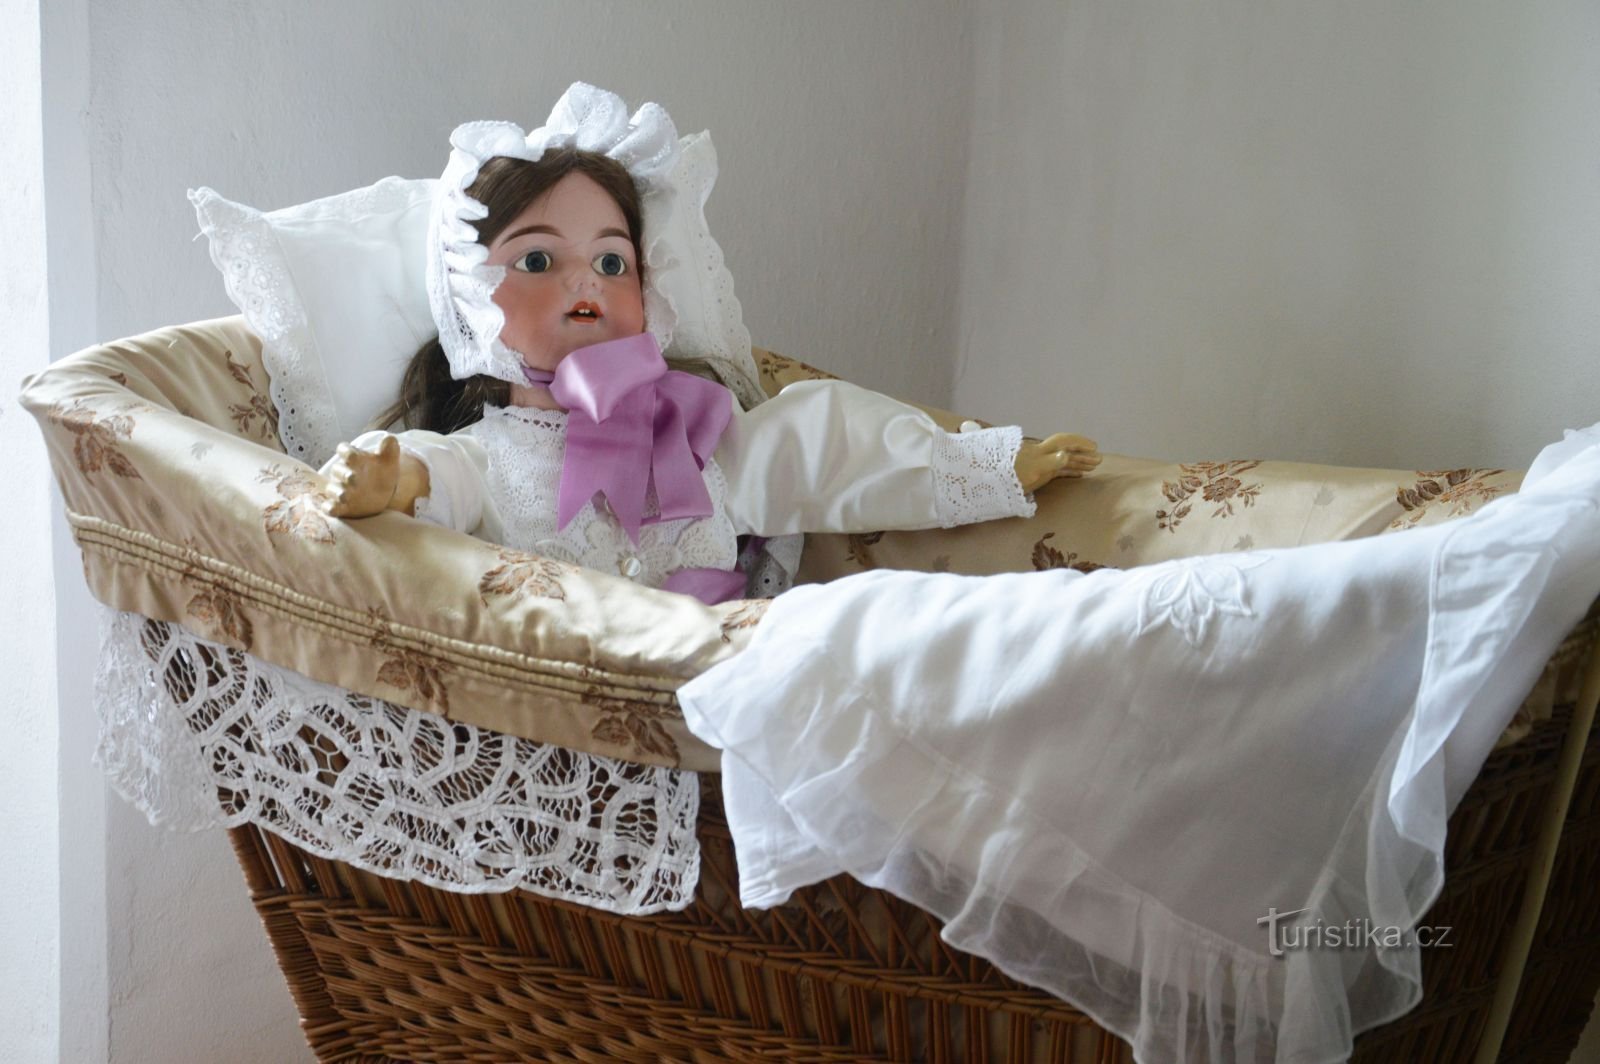 Peut-être rencontrerez-vous vous aussi votre poupée préférée à l'exposition du monastère de Votic. Photo: